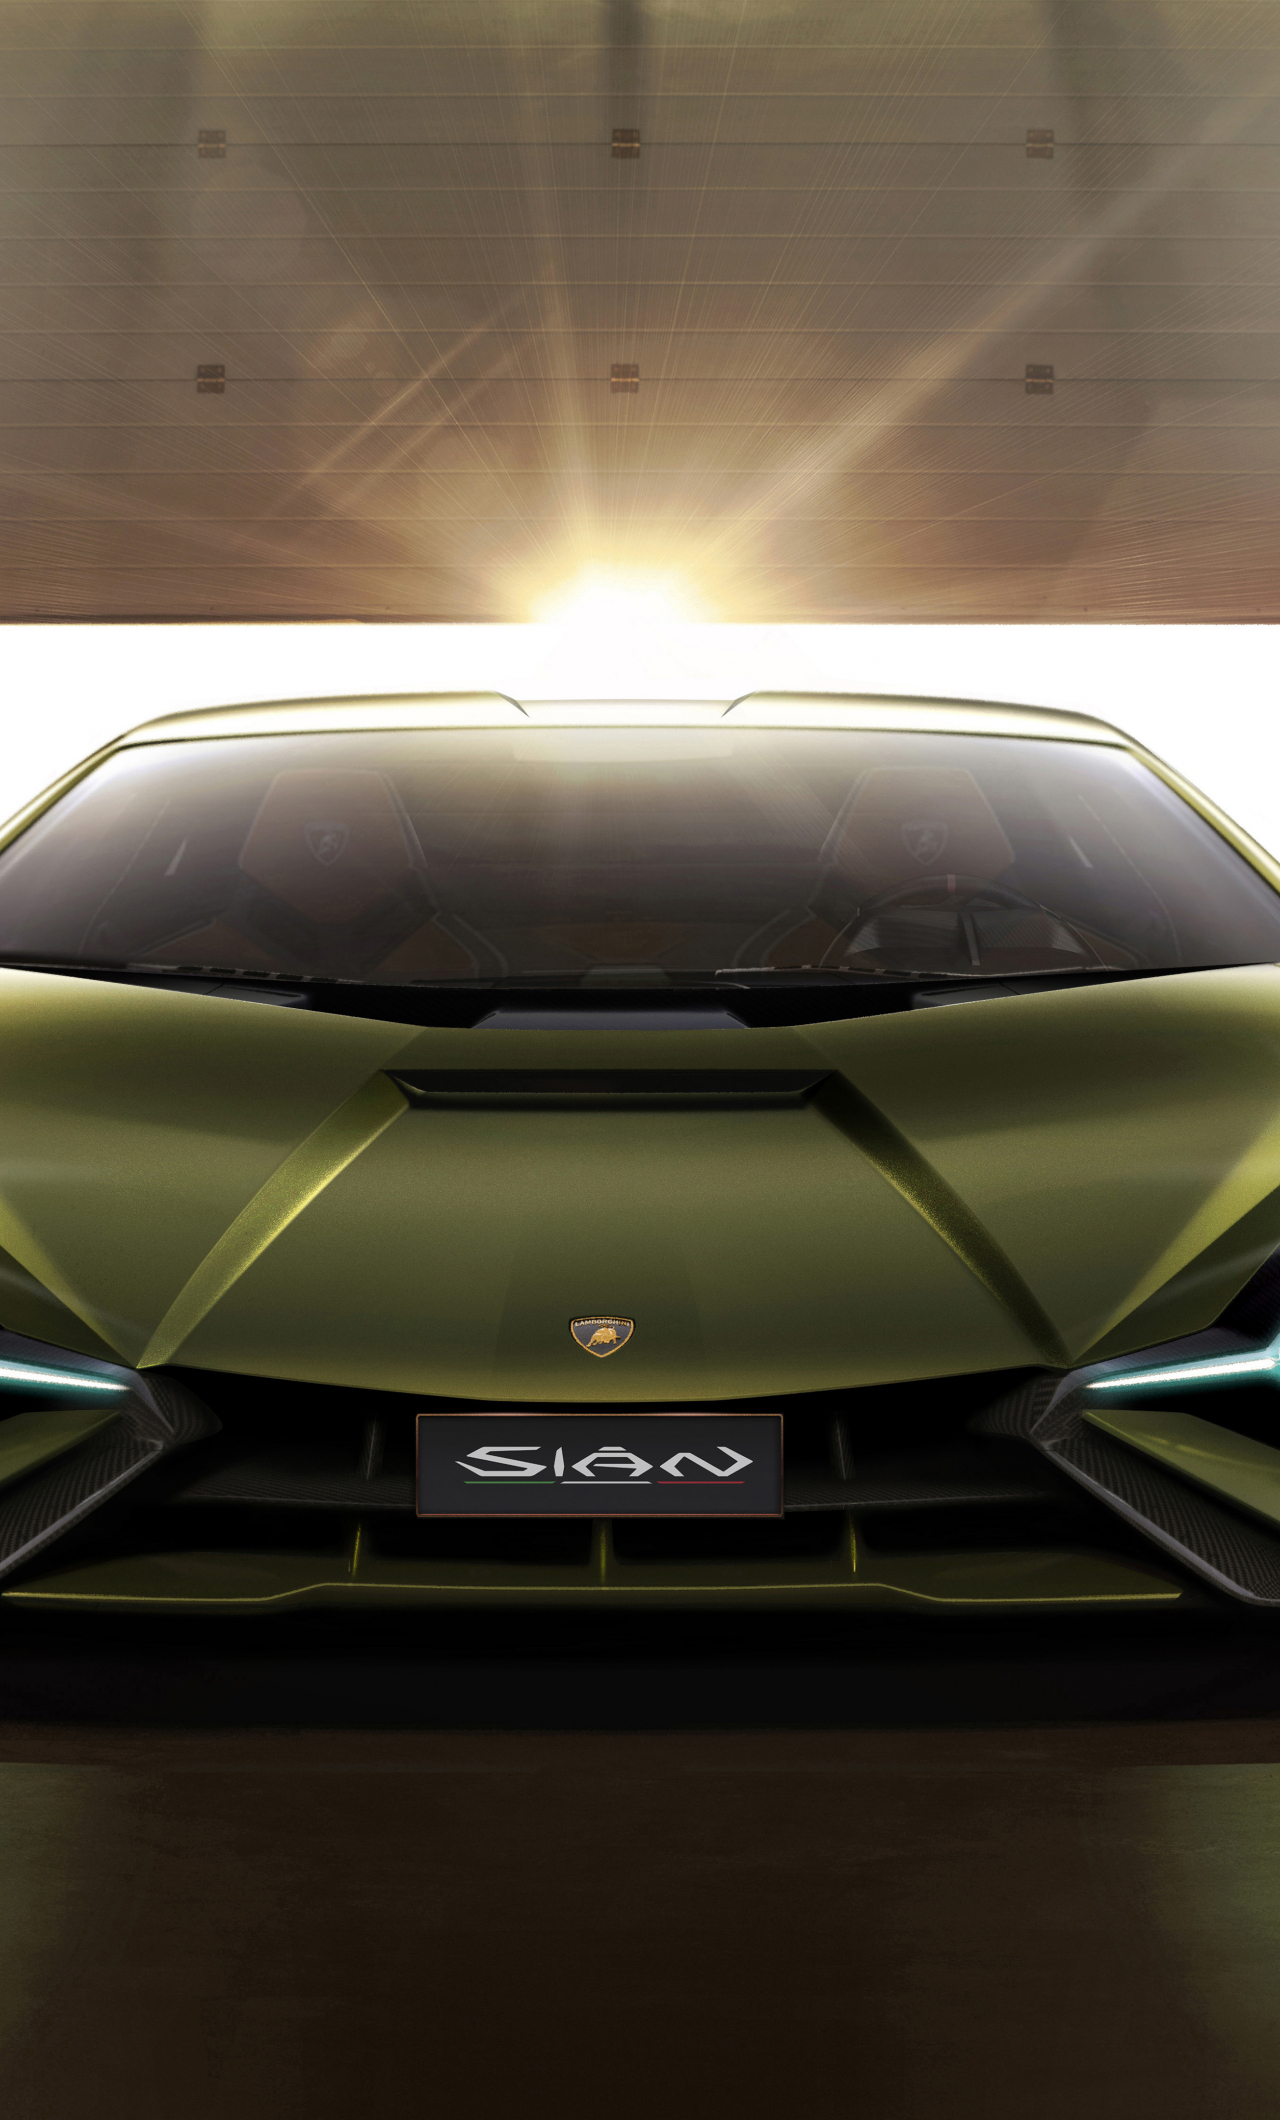 Download 1280x2120 Wallpaper Lamborghini Sian Front 2019 Car Iphone